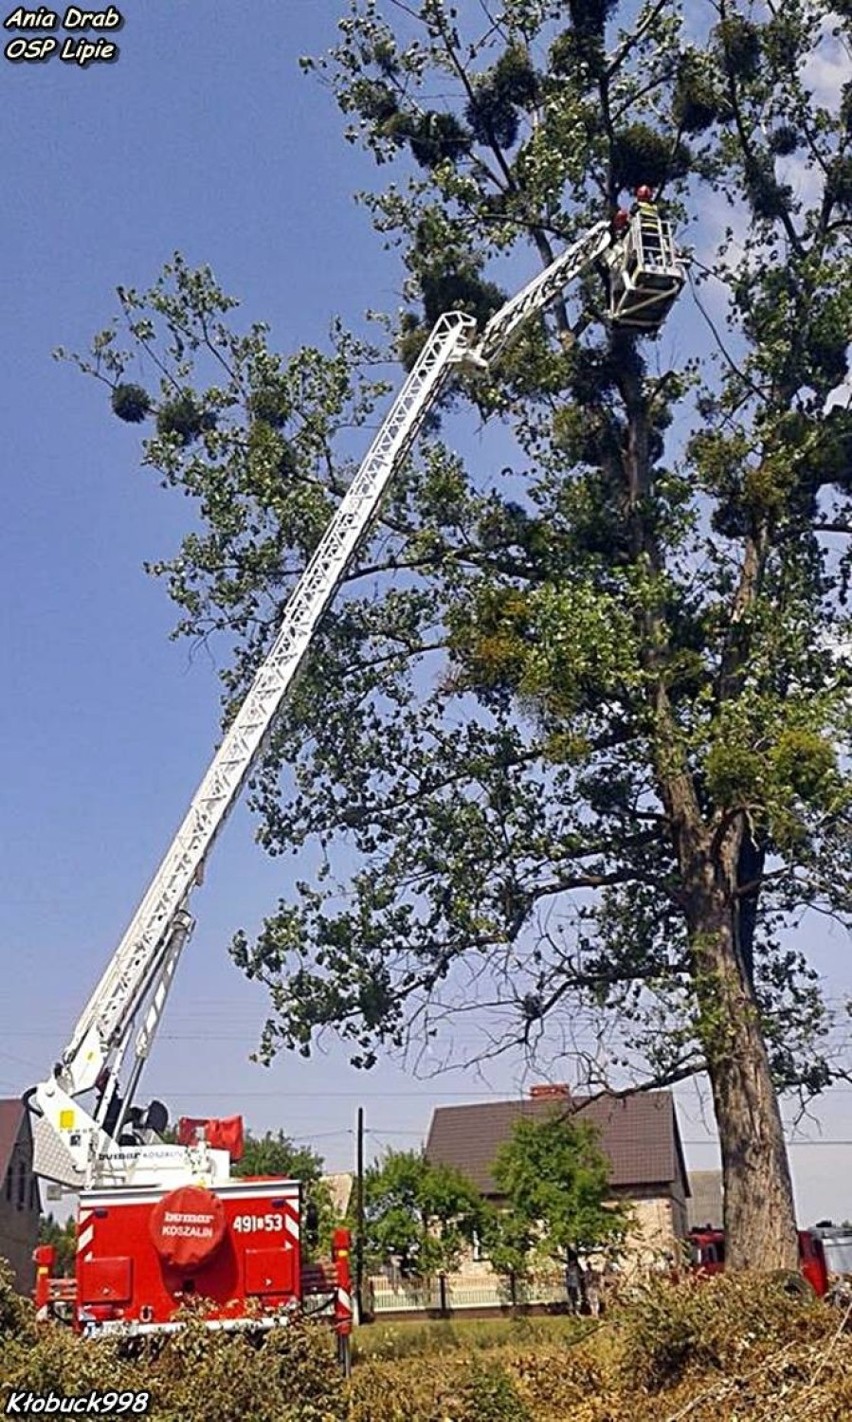 Lipie: Strażacy ratowali kota, który utknął na drzewie 